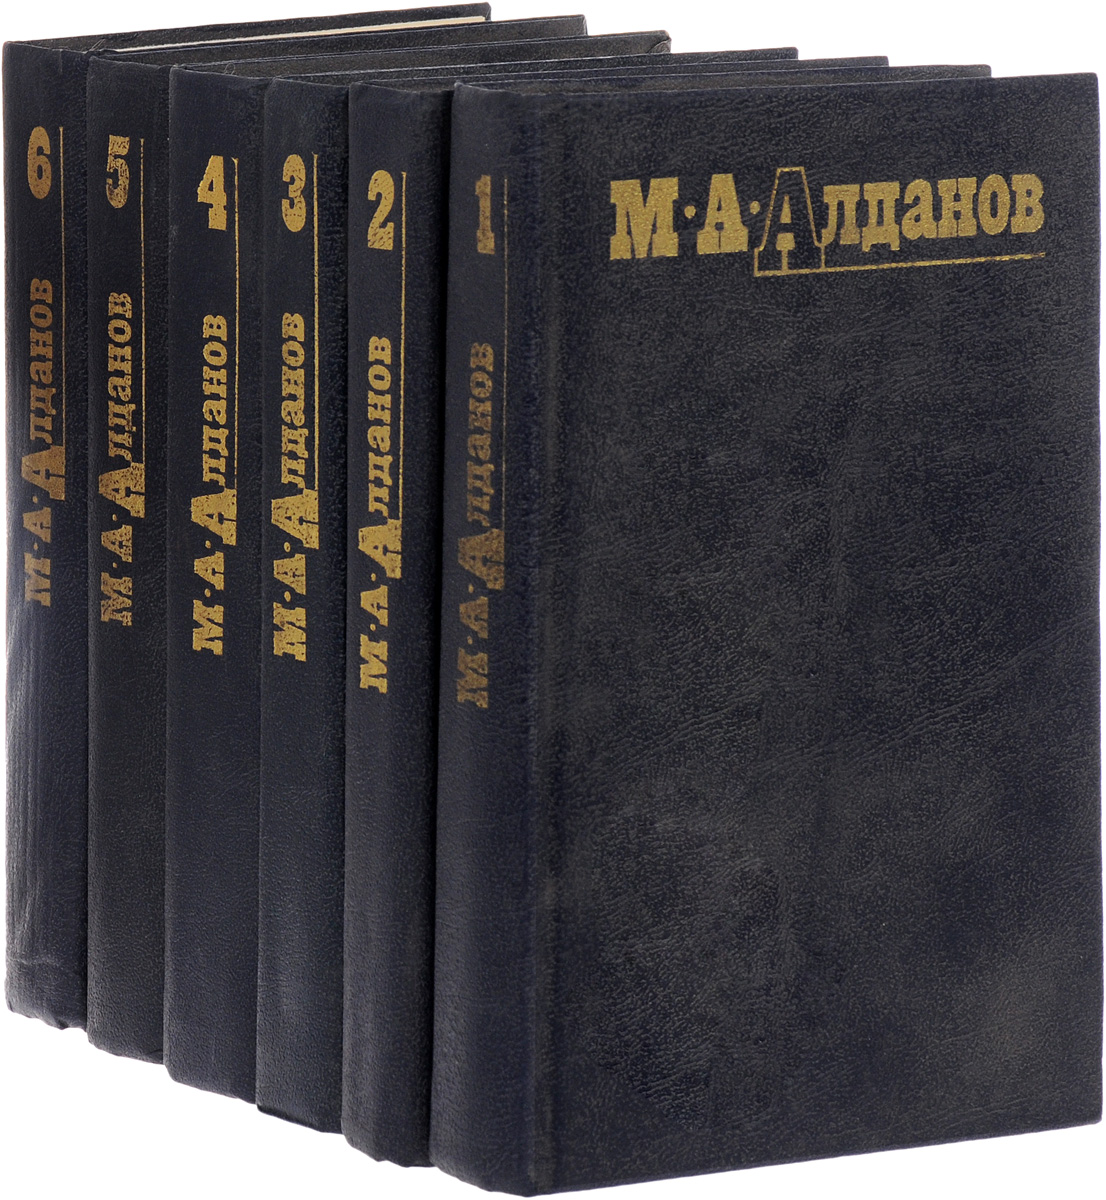 М. А. Алданов. Собрание сочинений в 6 томах (комплект из 6 книг)